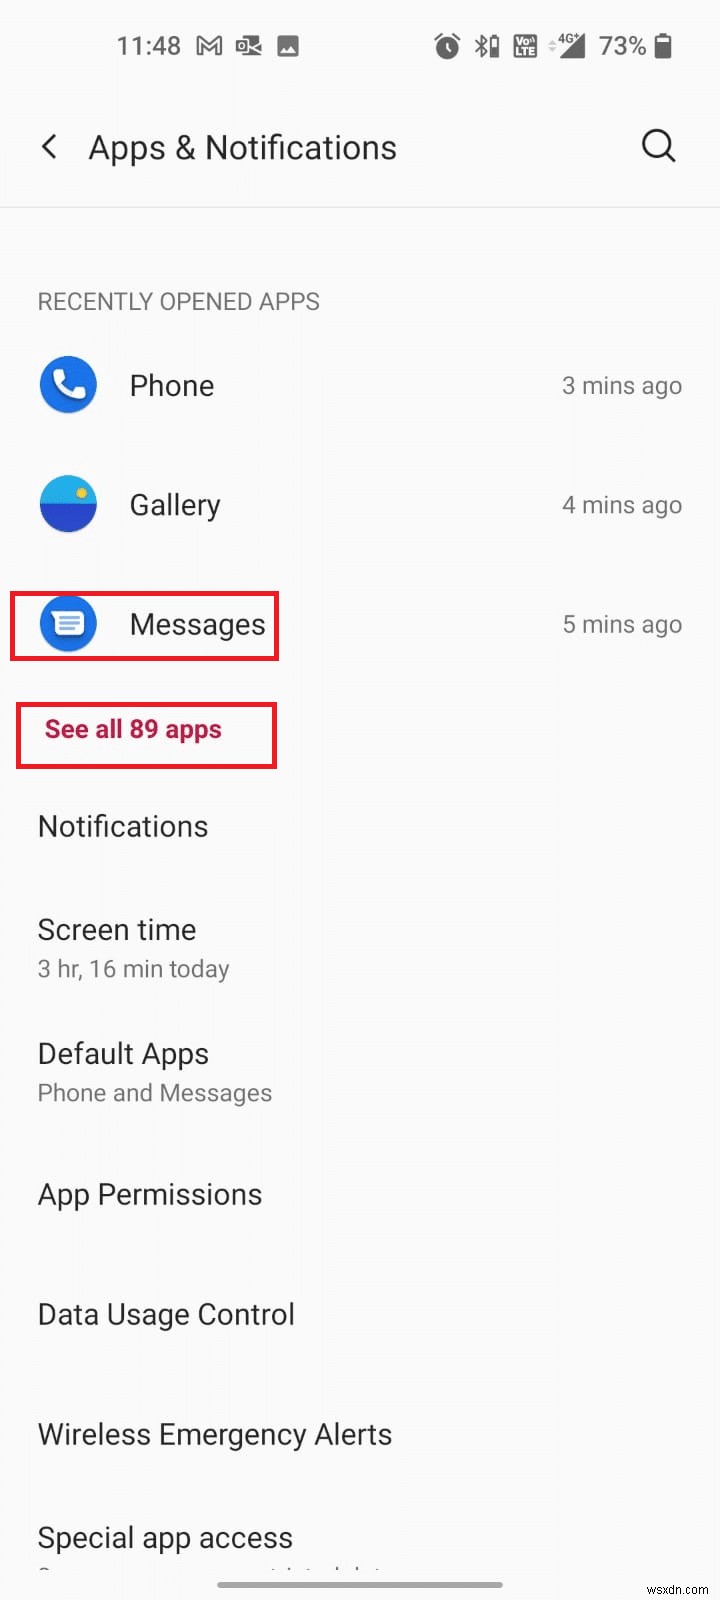 Sửa lỗi 98 SMS Chấm dứt bị Từ chối 